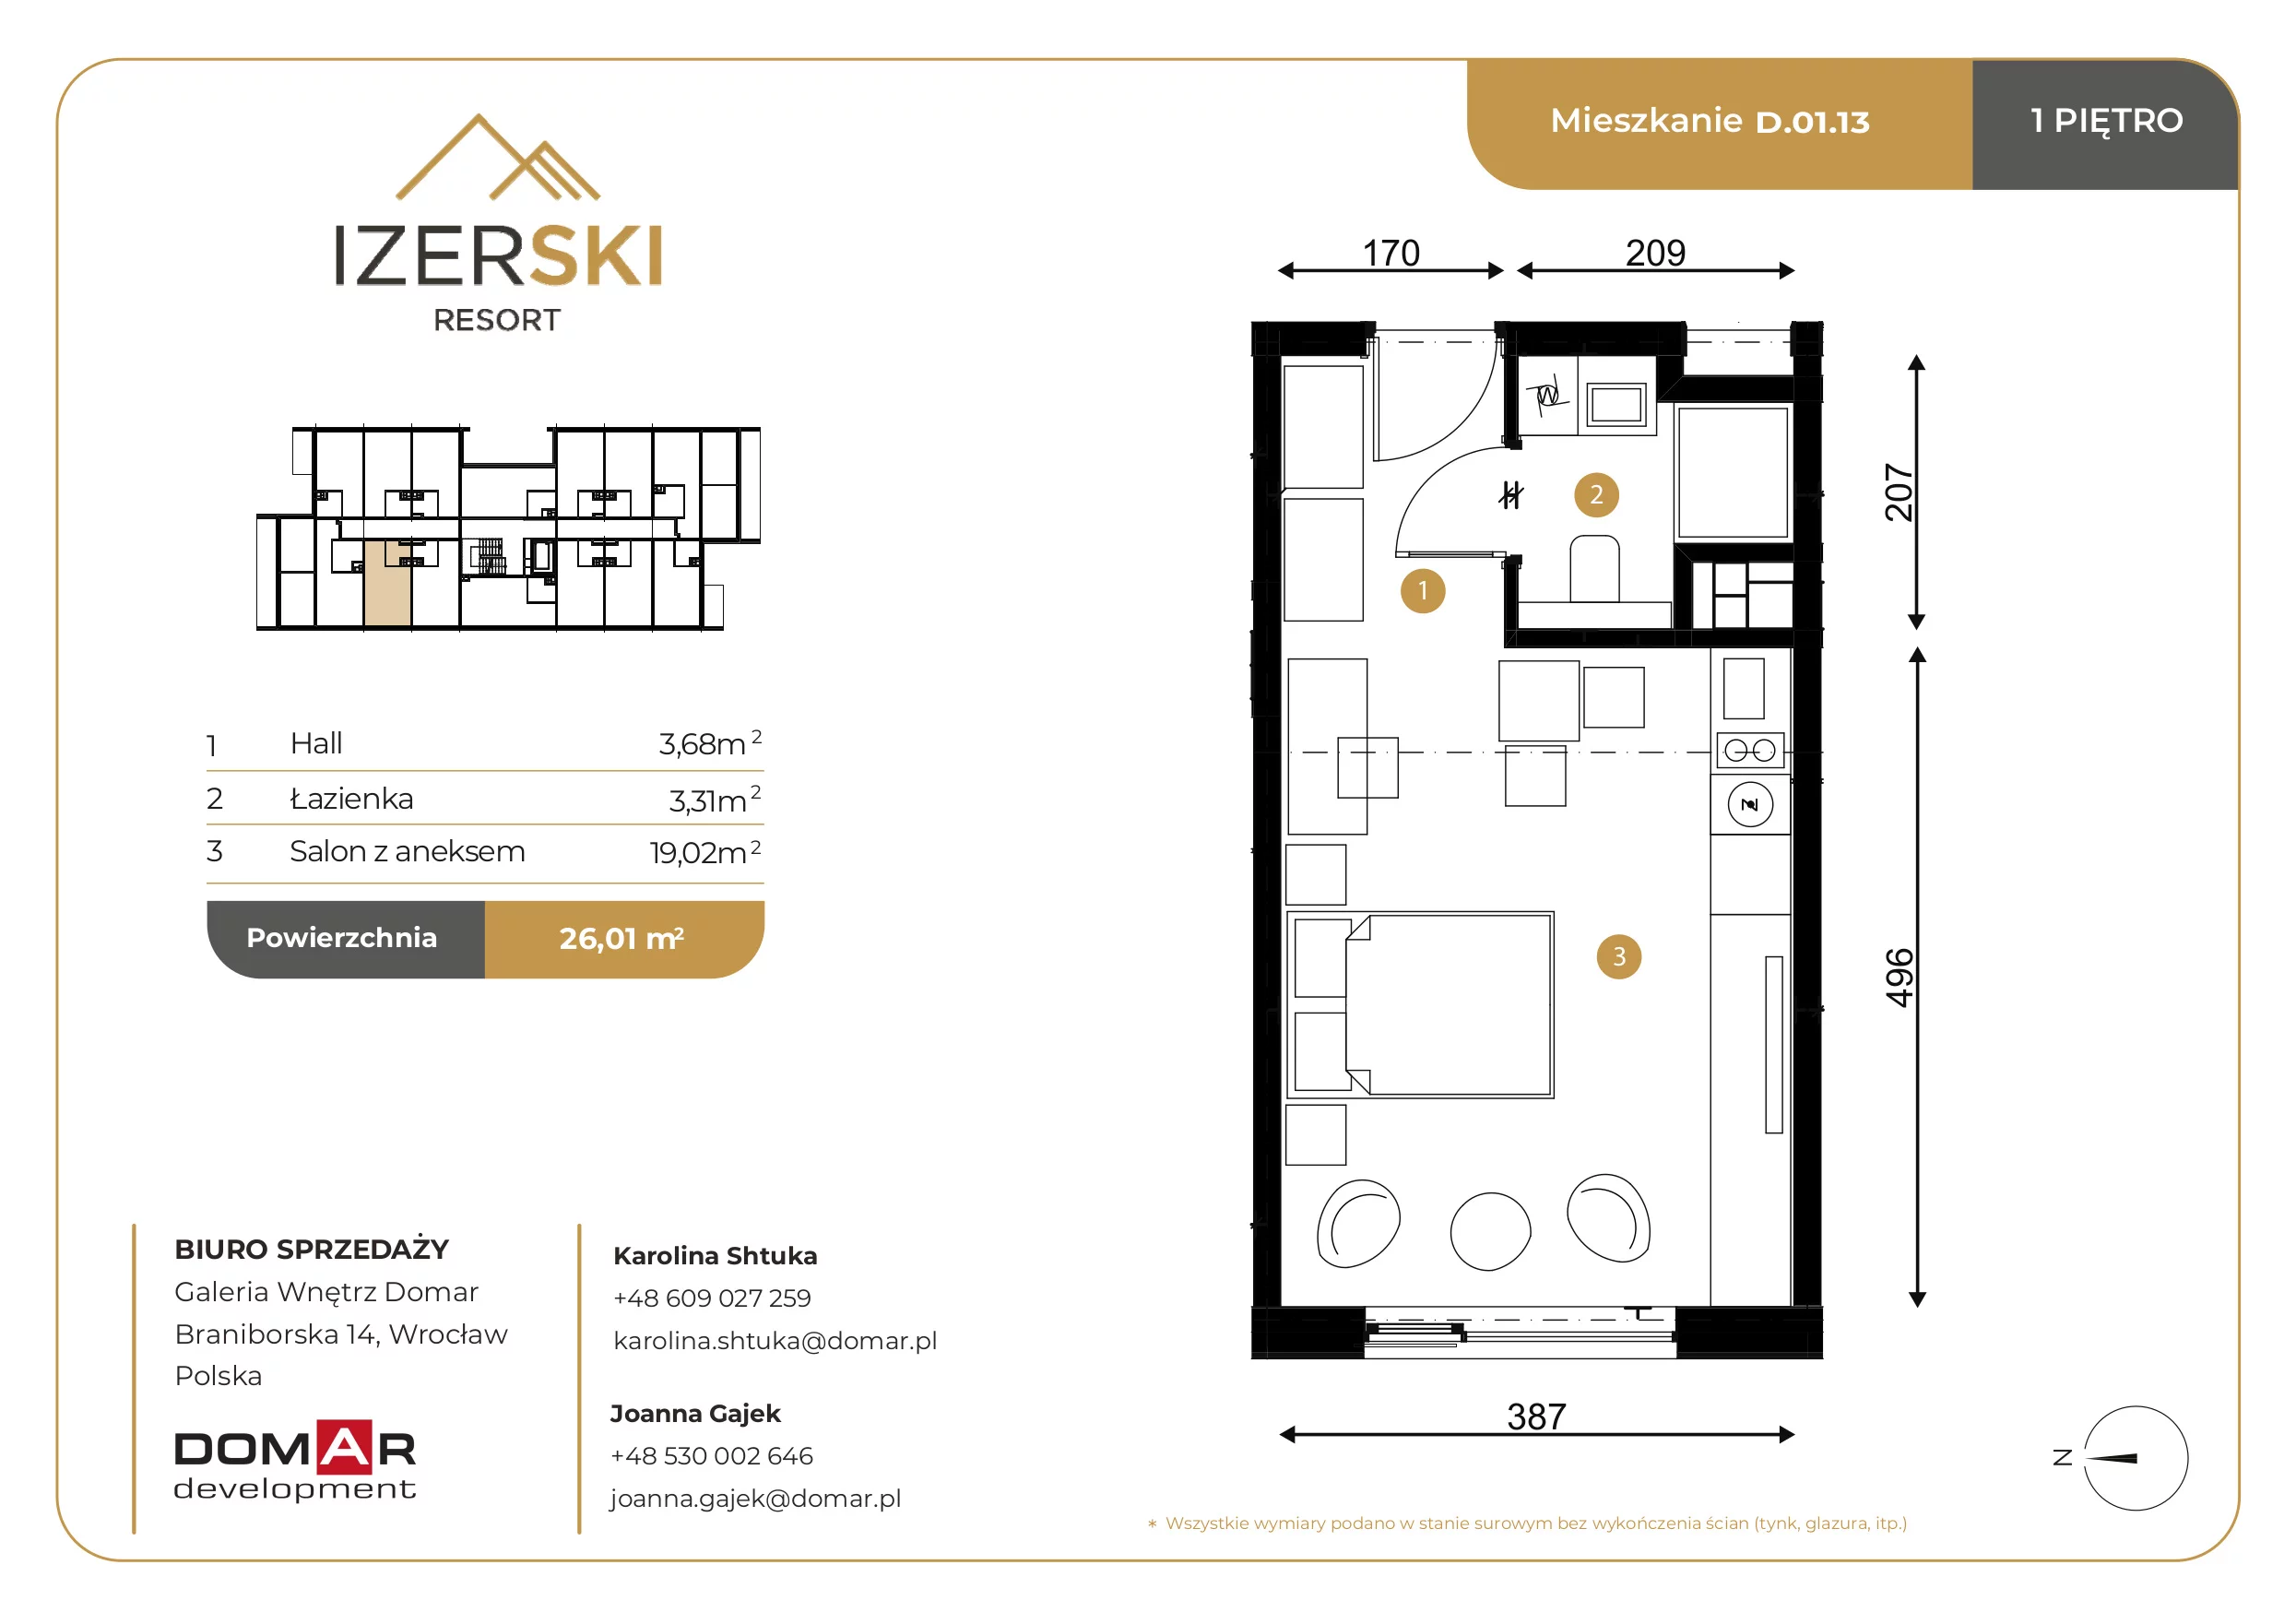 Apartament inwestycyjny 26,01 m², piętro 1, oferta nr D.01.13, IzerSKI Resort, Świeradów-Zdrój, ul. Jana Kilińskiego 2